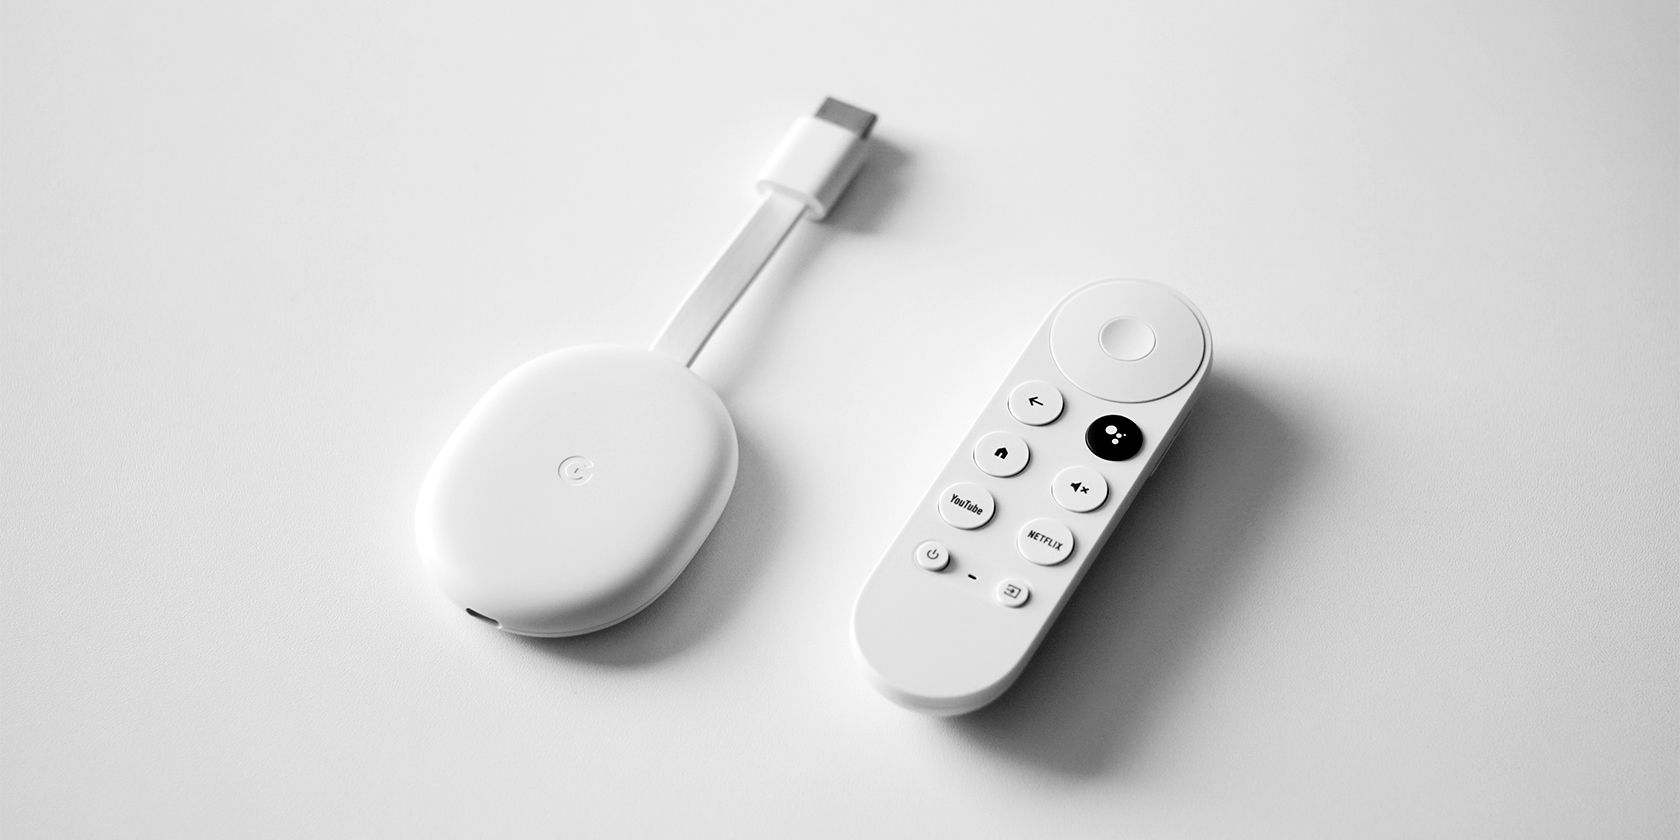 Chromecast and remote